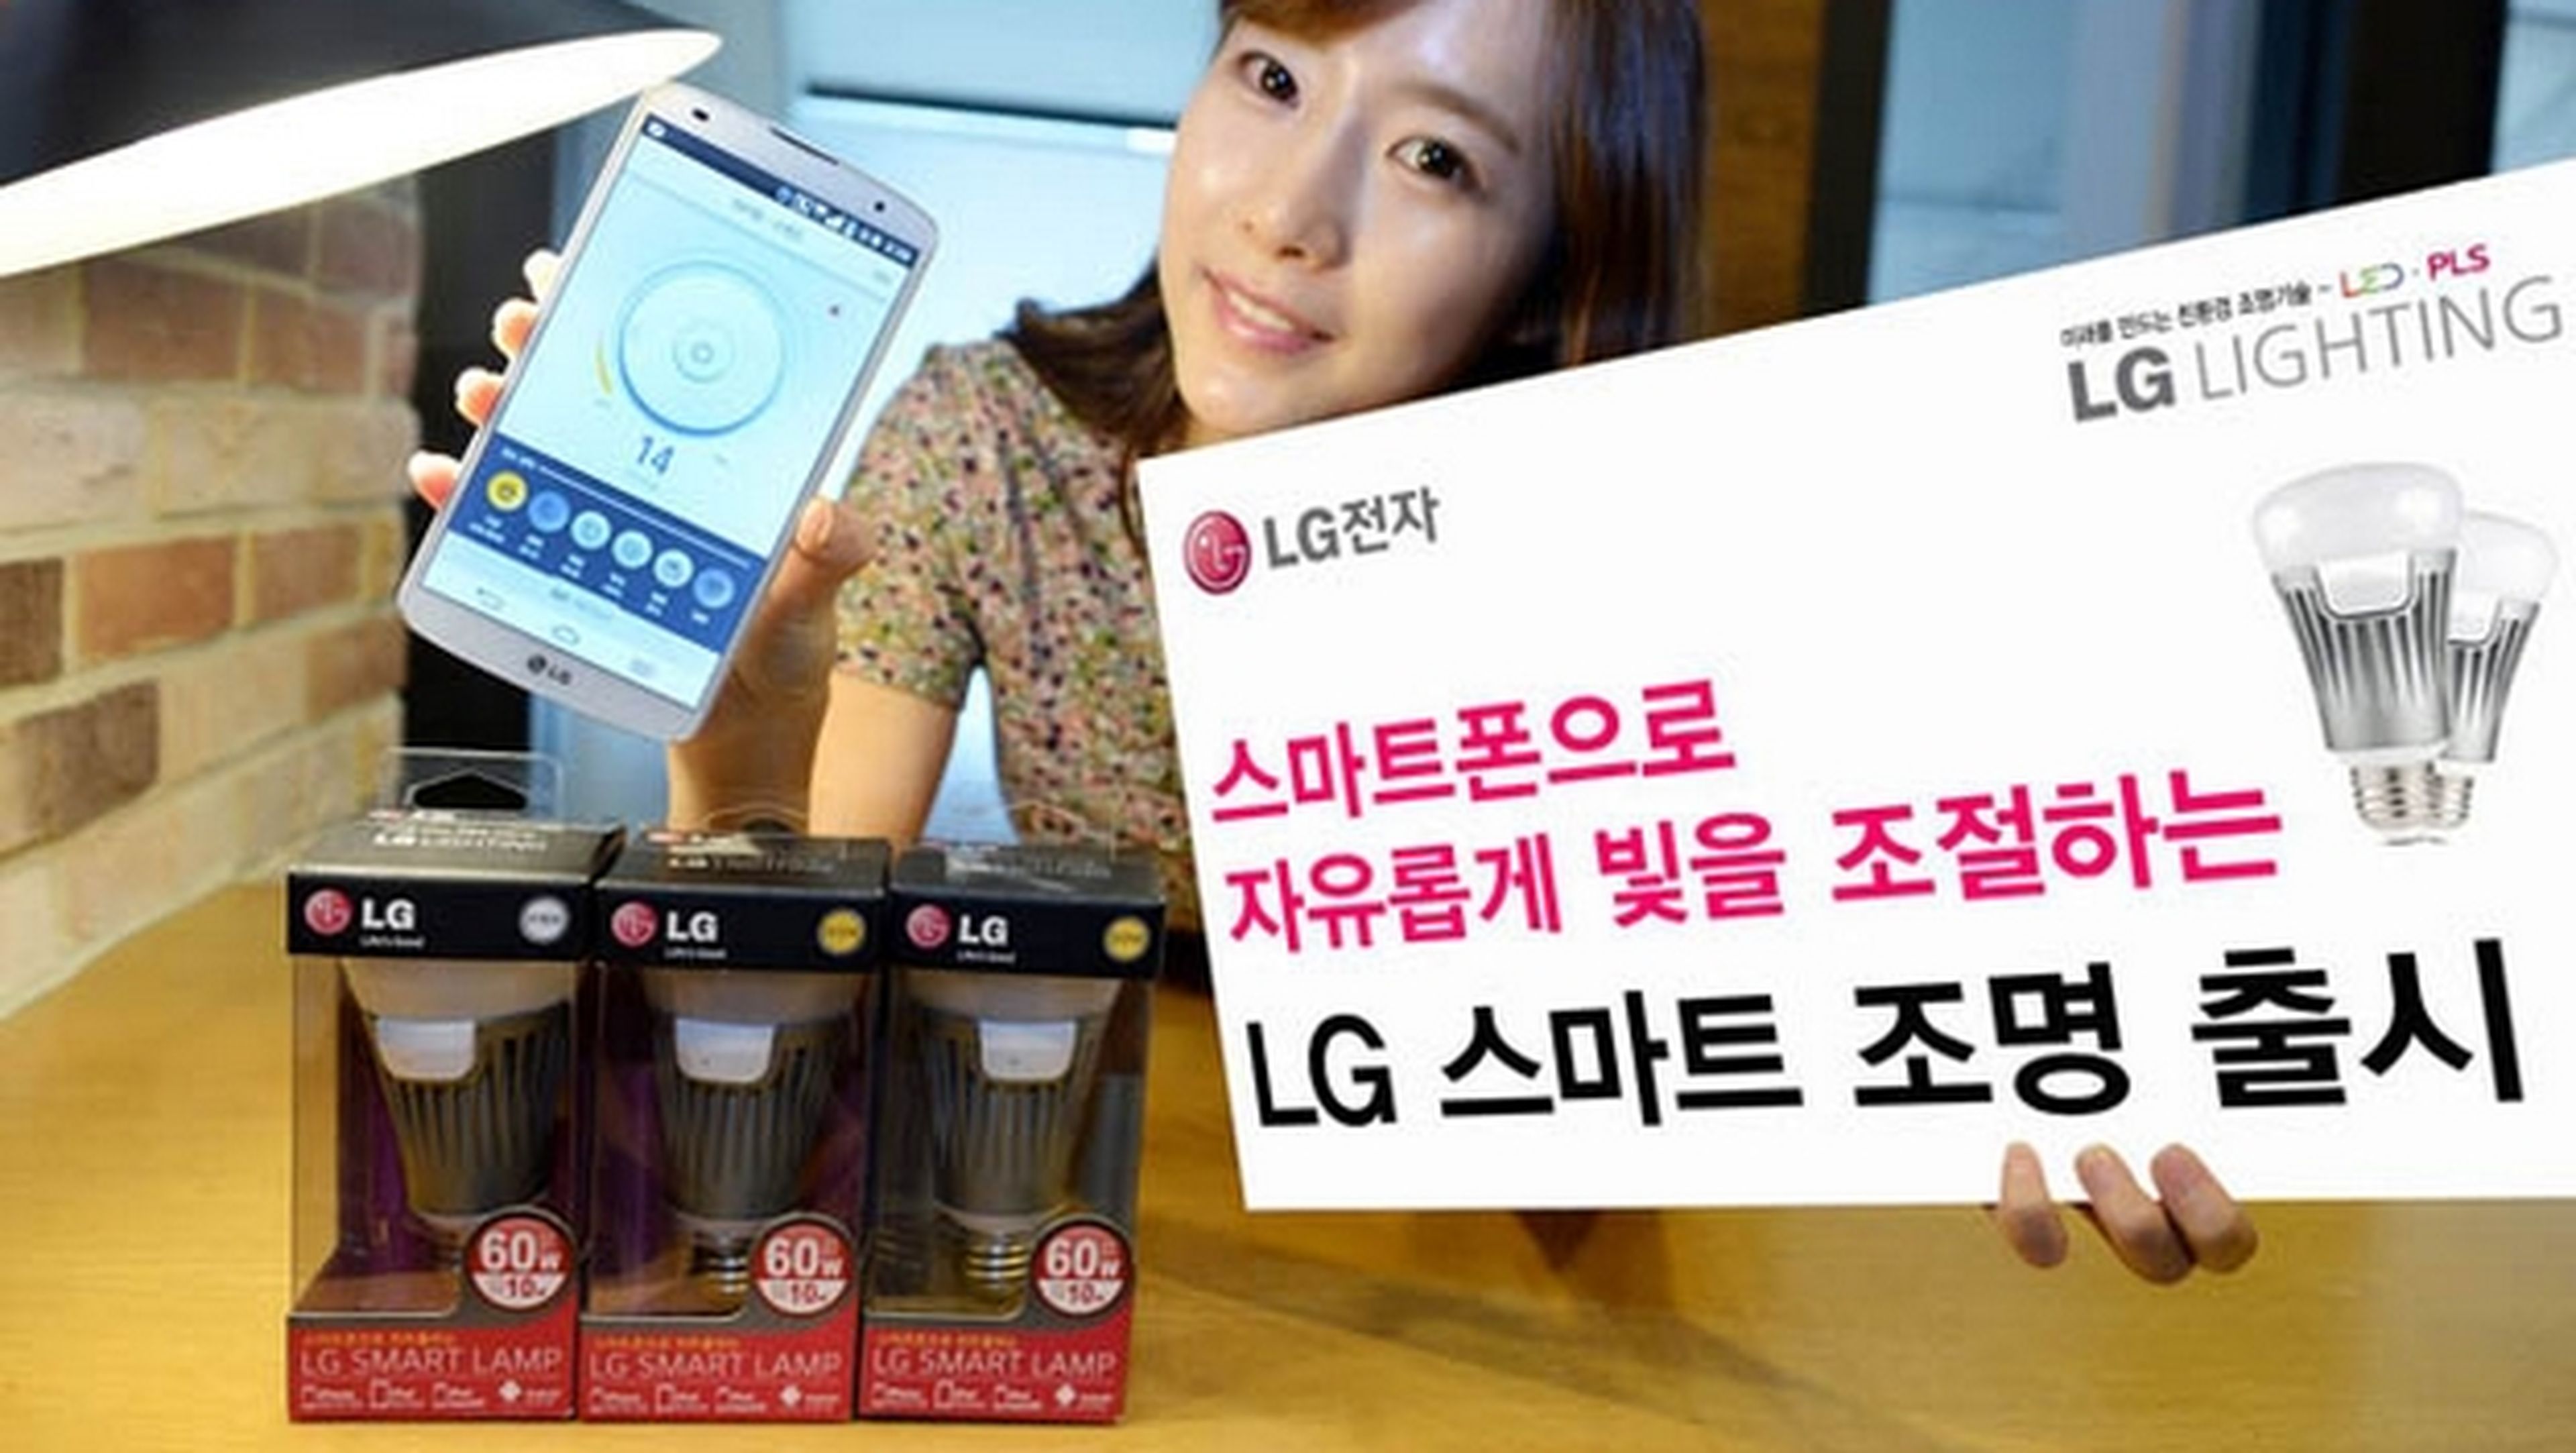 LG presenta la bombilla inteligente LG Smart Bulb, con modo Party, te avisa cuando te llaman al móvil, simula que hay alguien en casa